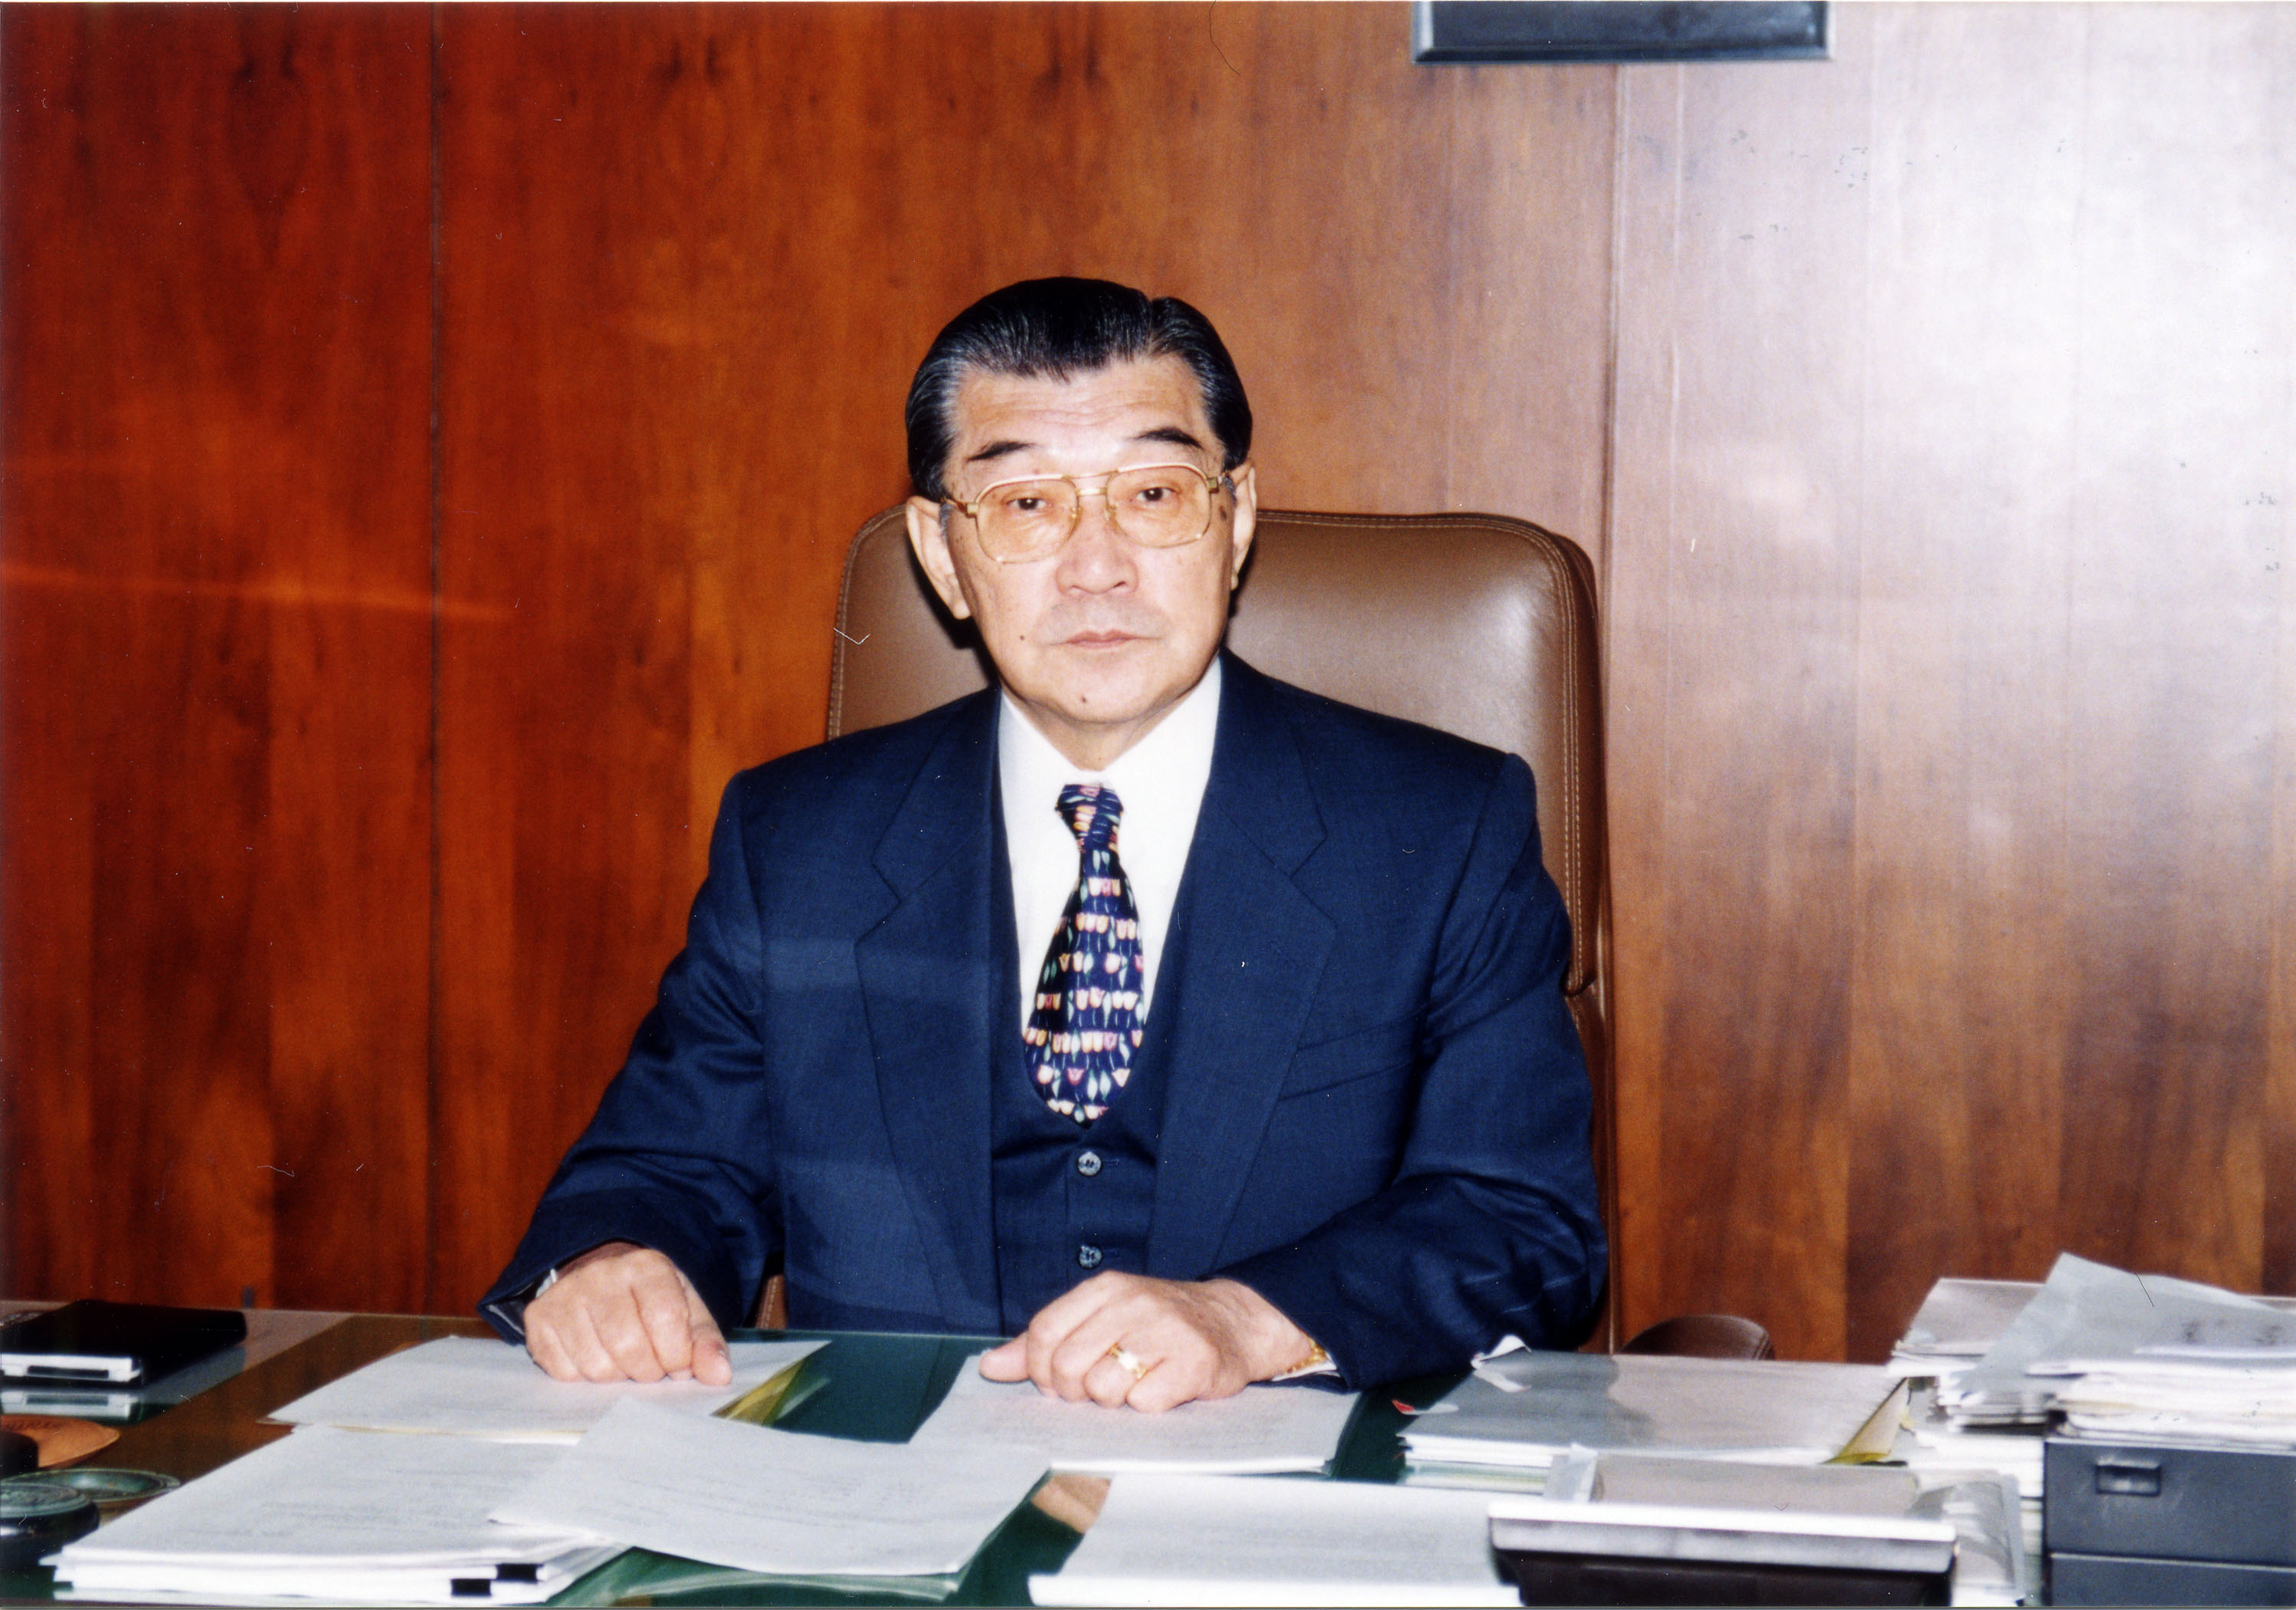 放影研元理事長の長瀧重信（ながたき・しげのぶ）氏が2016年11月12日（土）に84歳の生涯を閉じられました